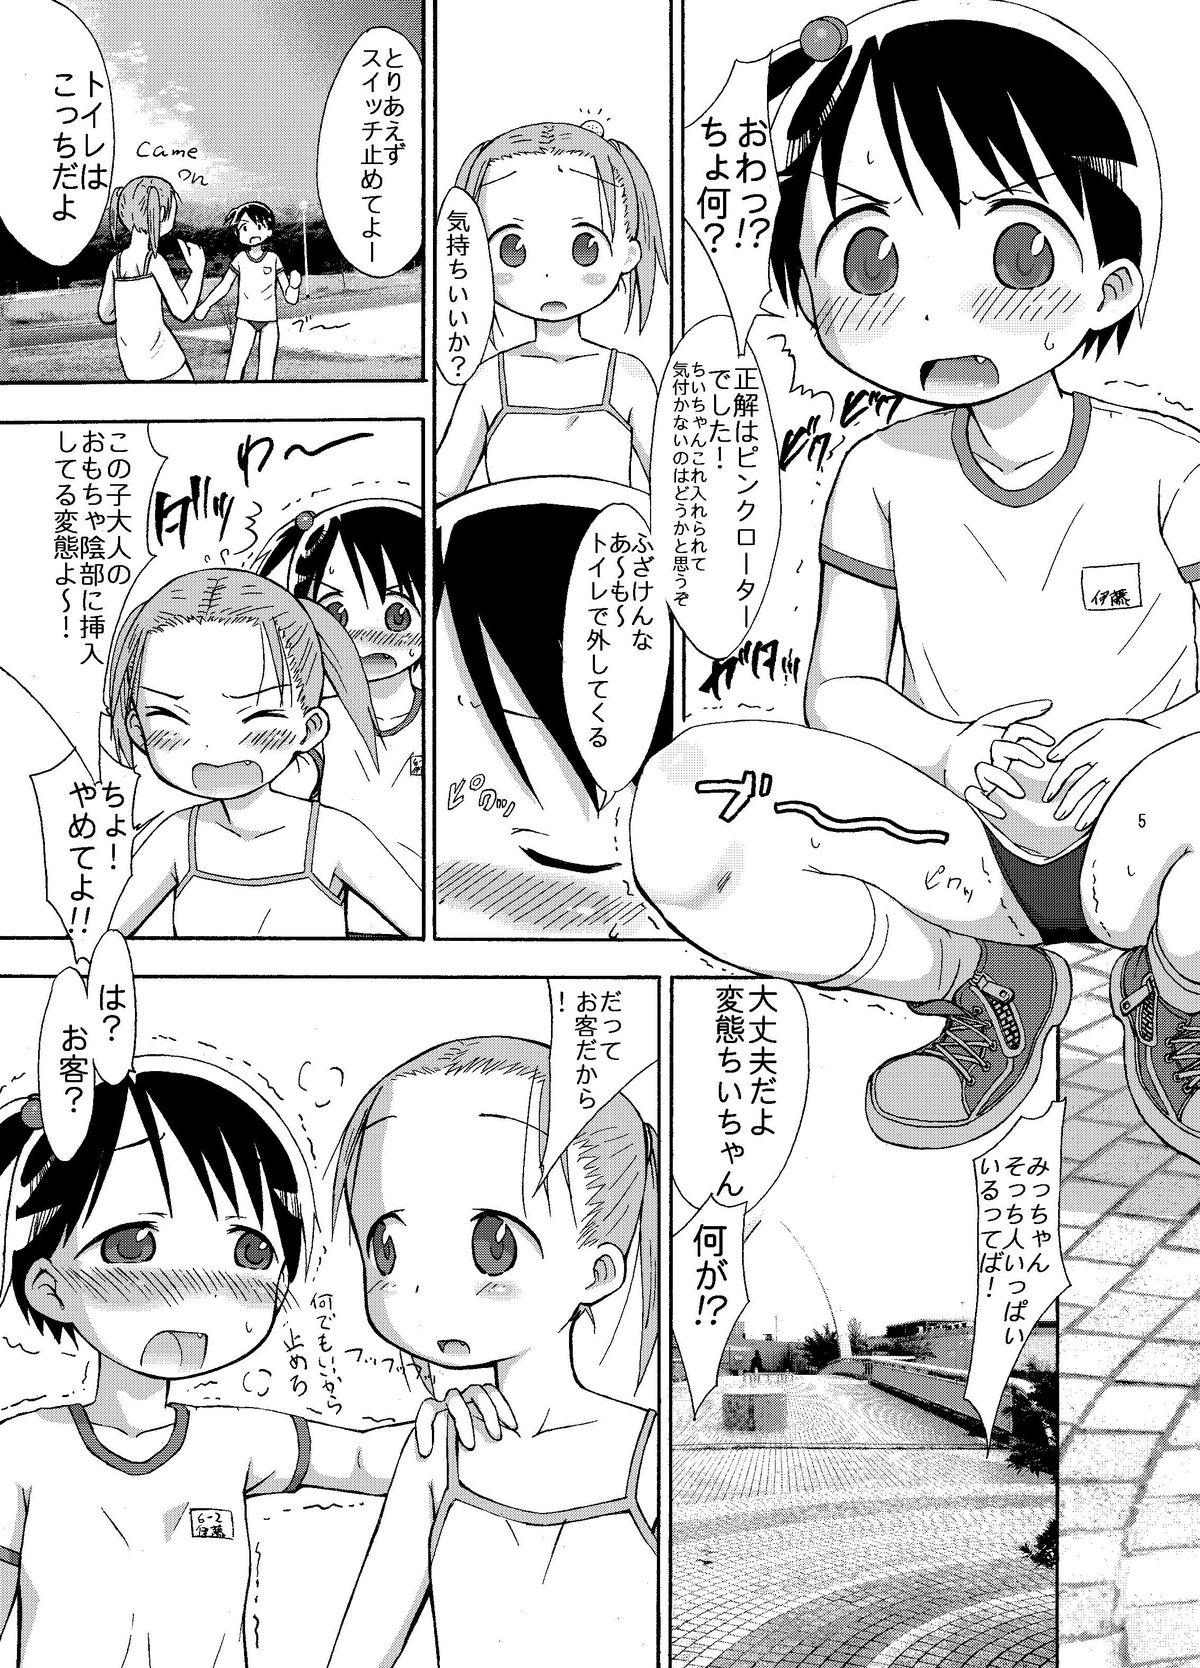 Buttfucking mashimaro ism L - Ichigo mashimaro Ameteur Porn - Page 5